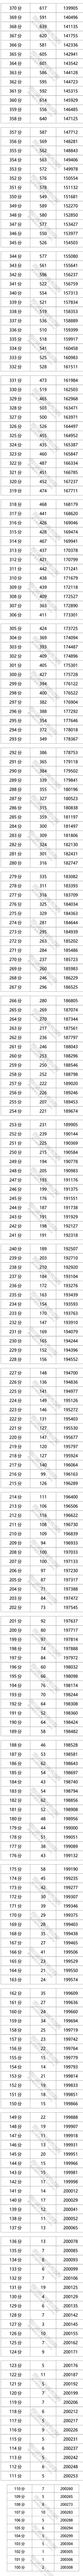 四川省2021年普通高考文科成绩分段统计表